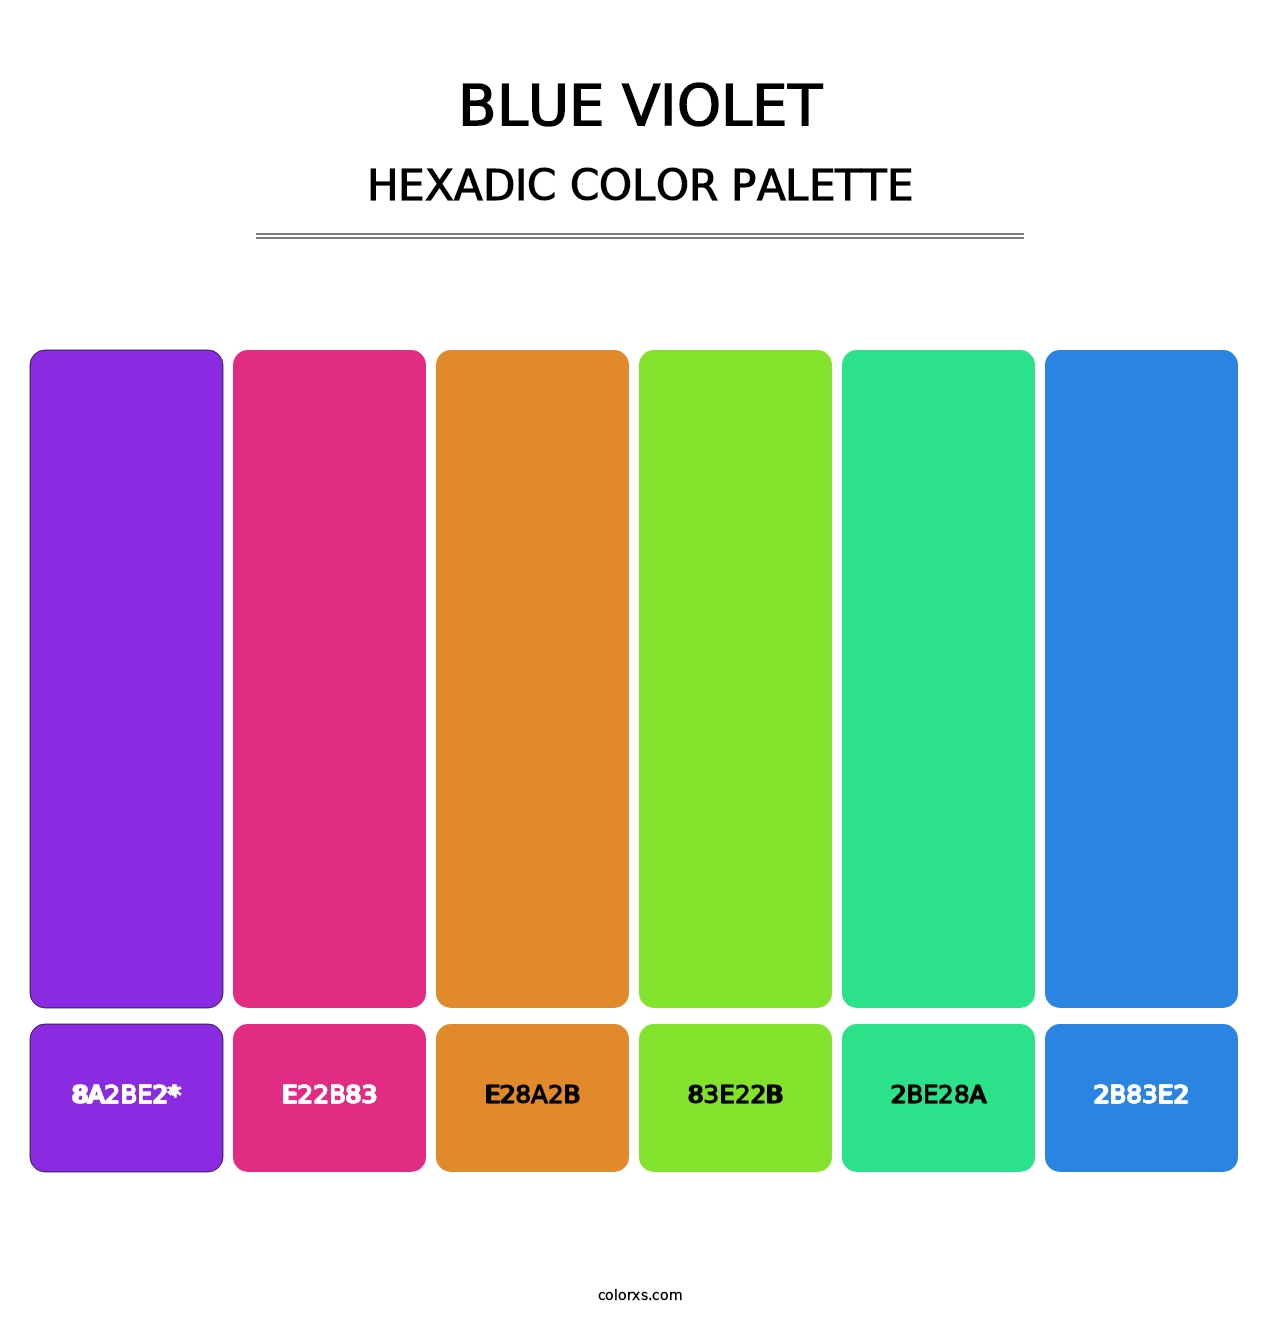 Blue Violet - Hexadic Color Palette